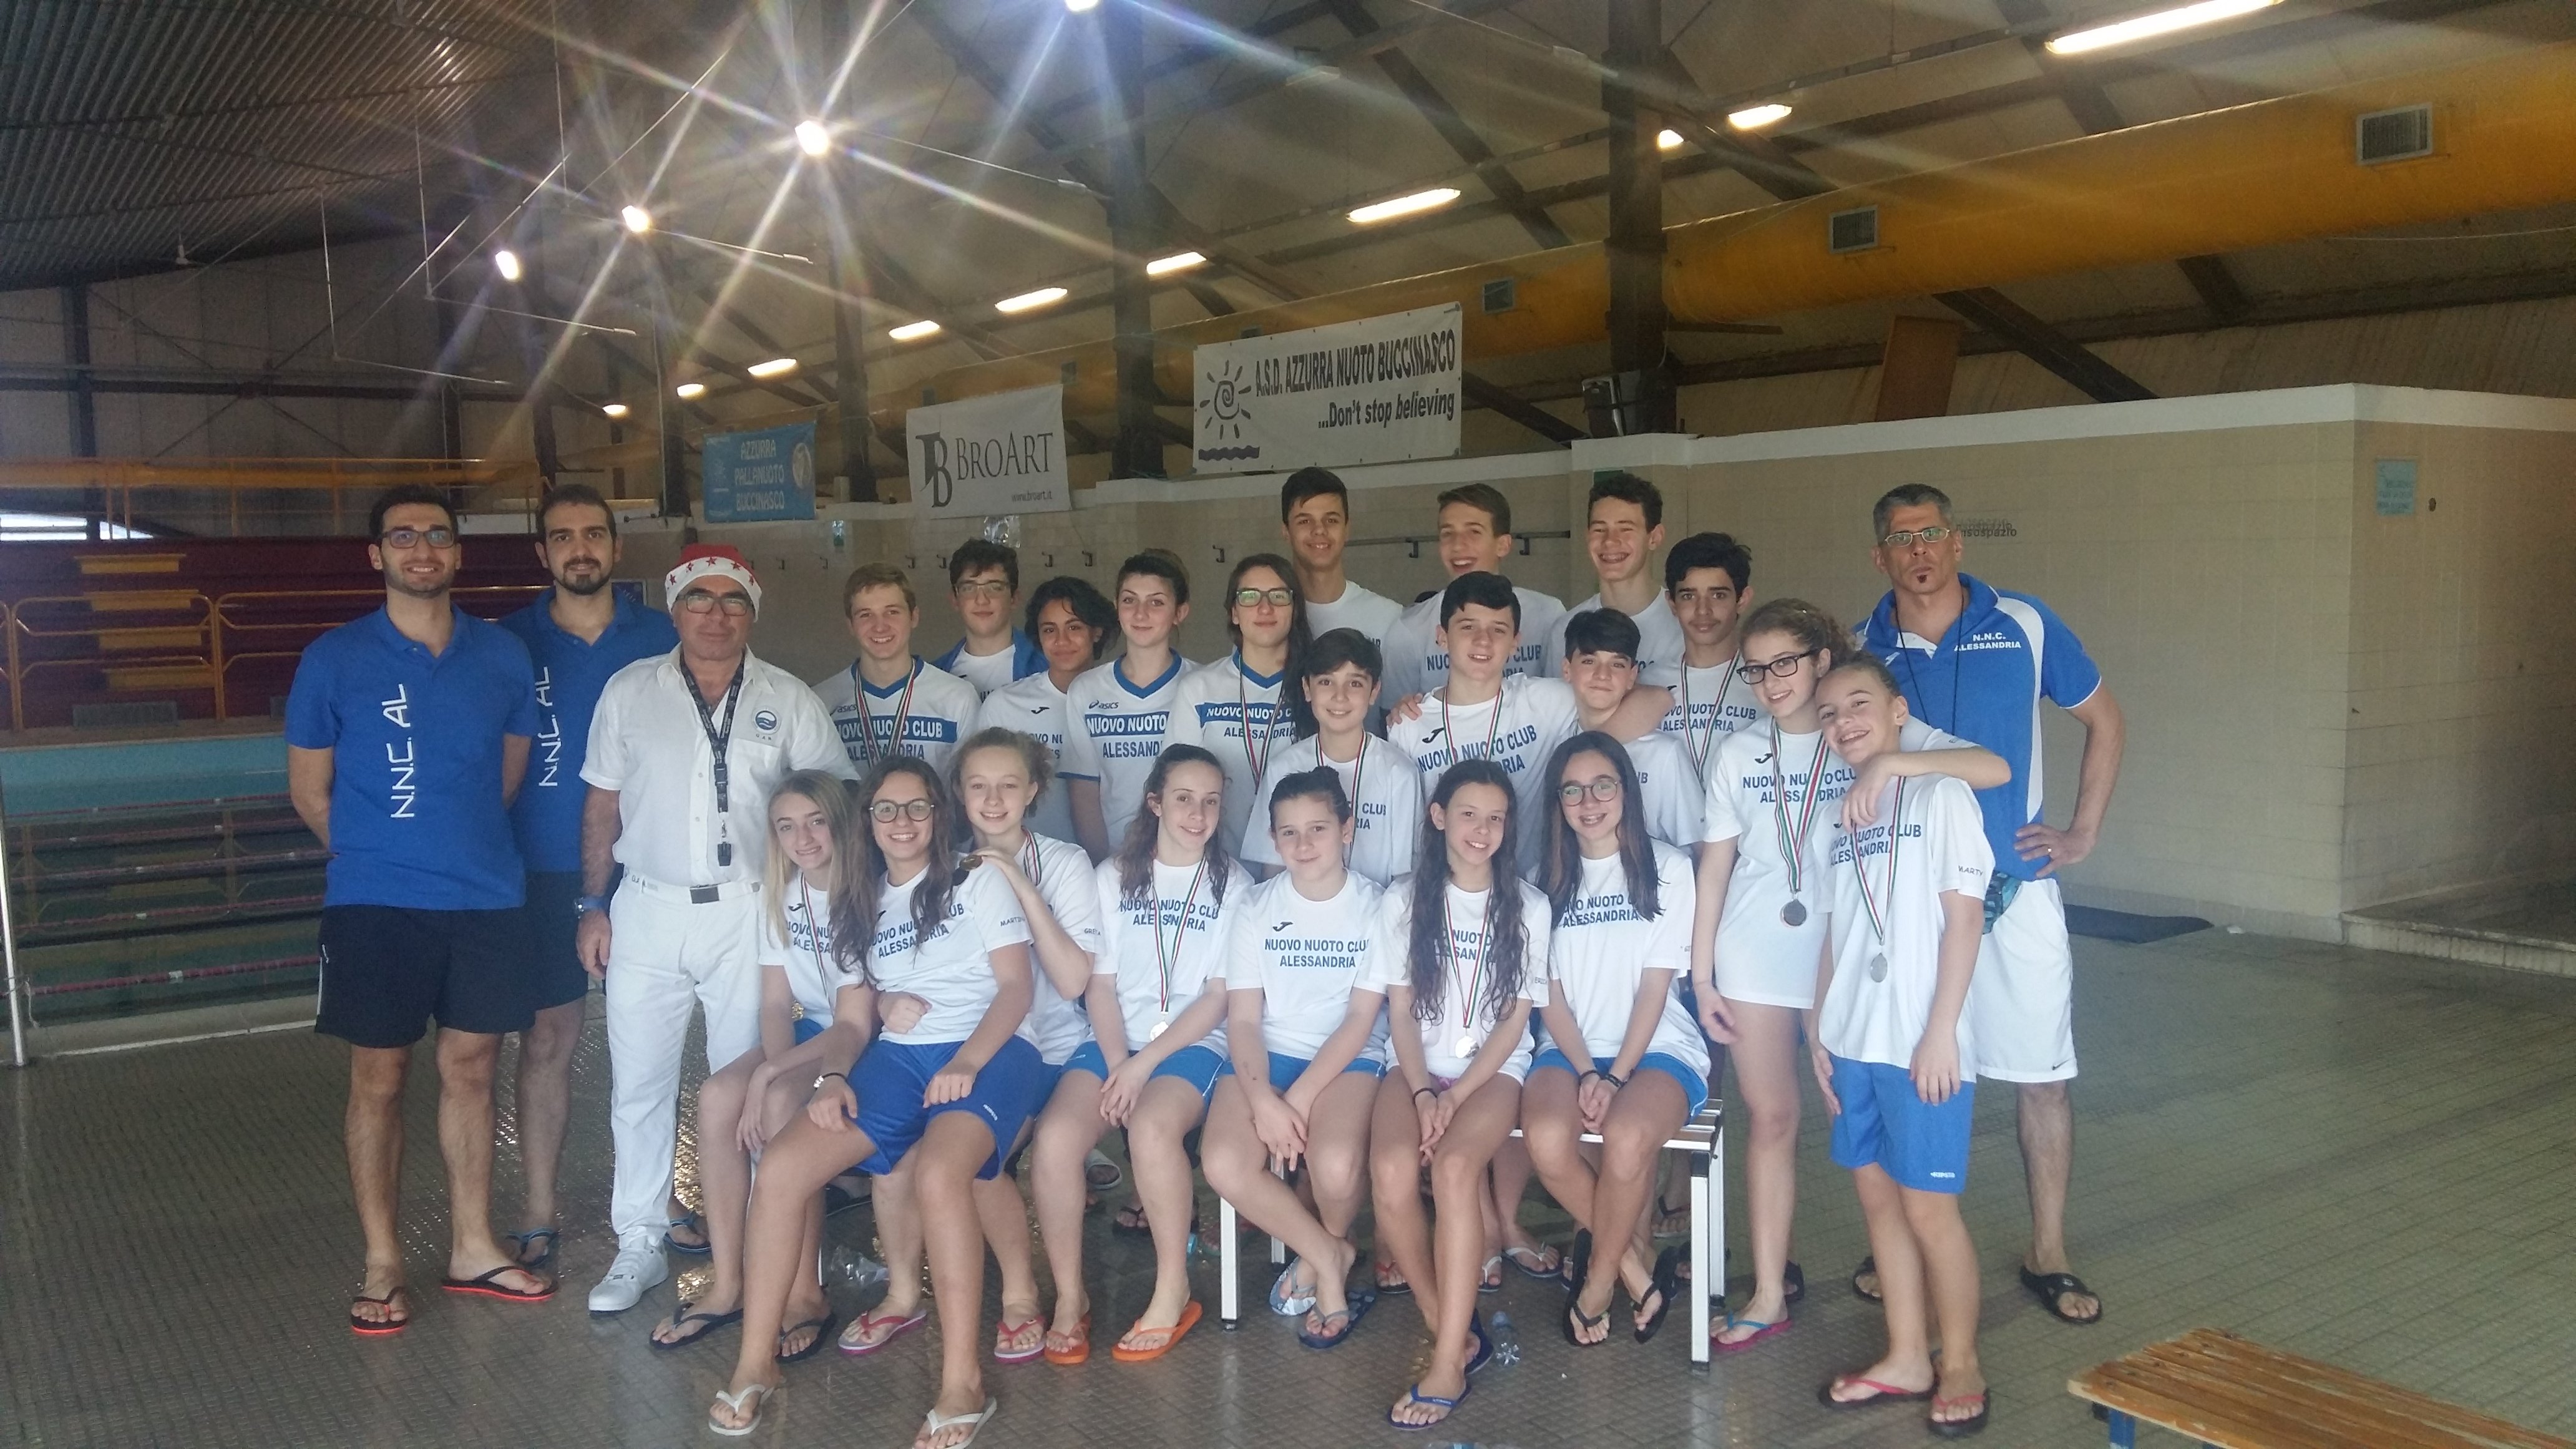 Nuovo Nuoto Club Alessandria: 16 medaglie agli interregionali